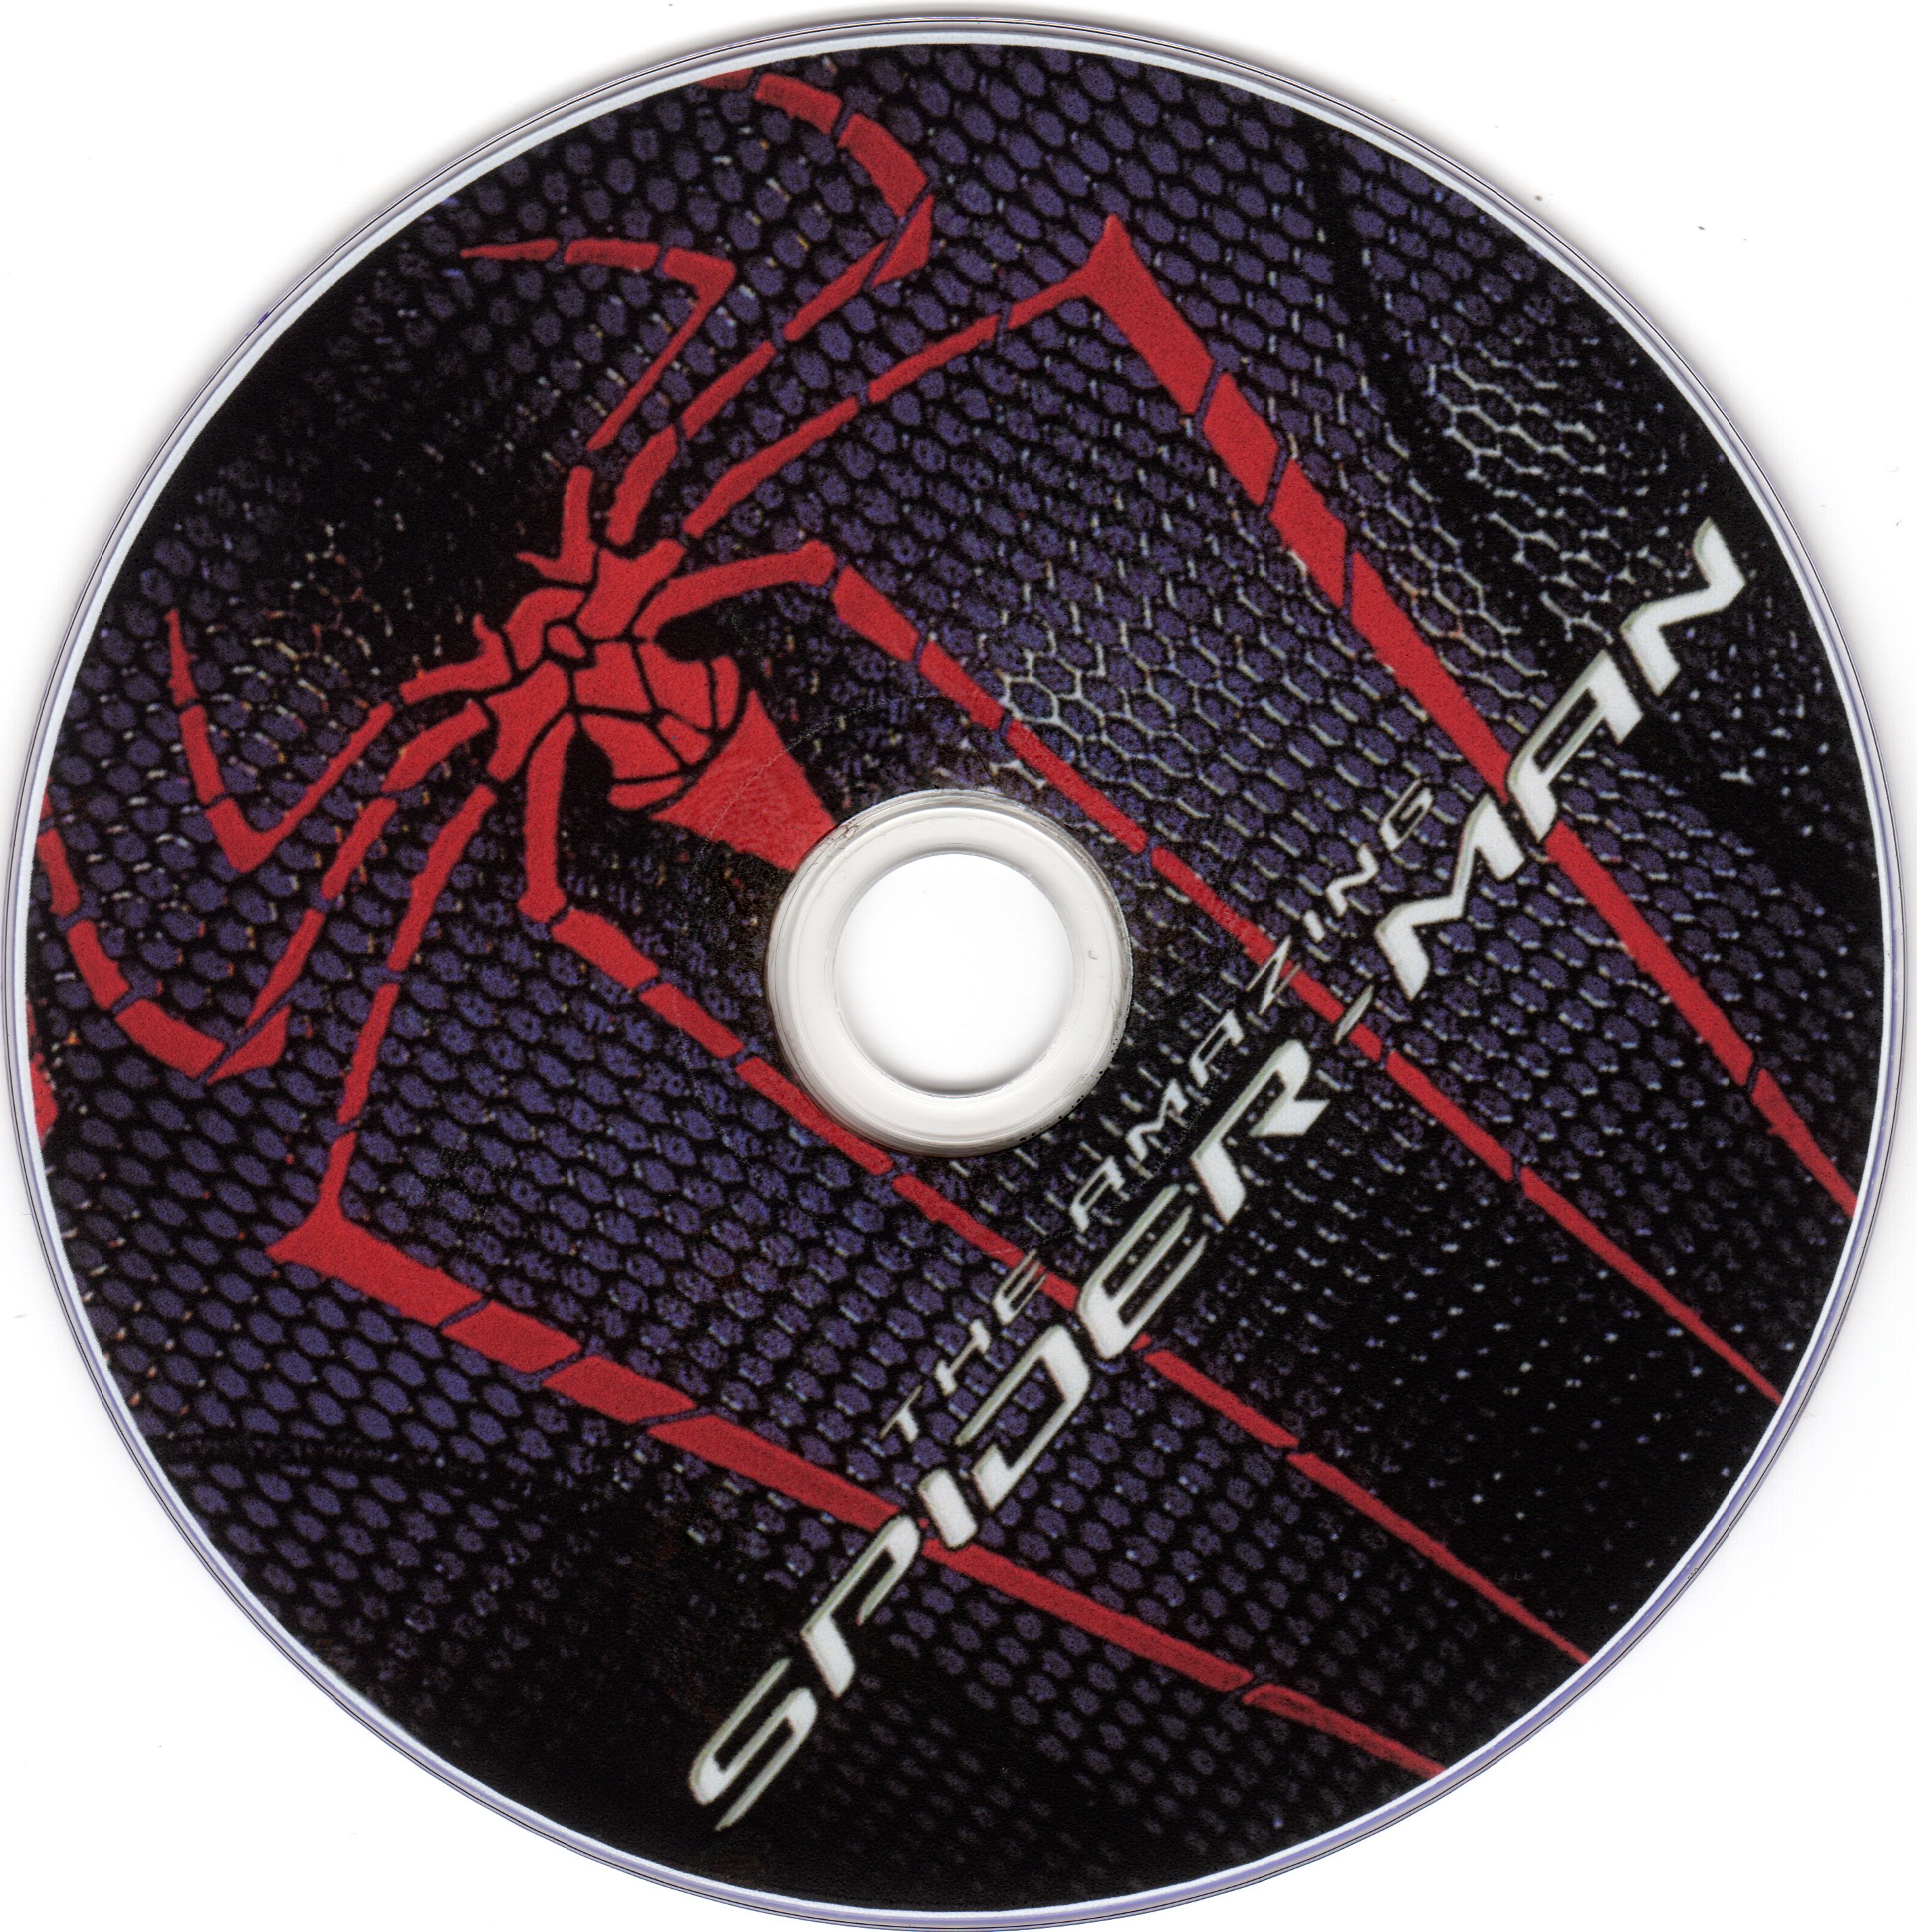 The Amazing Spider-Man v2